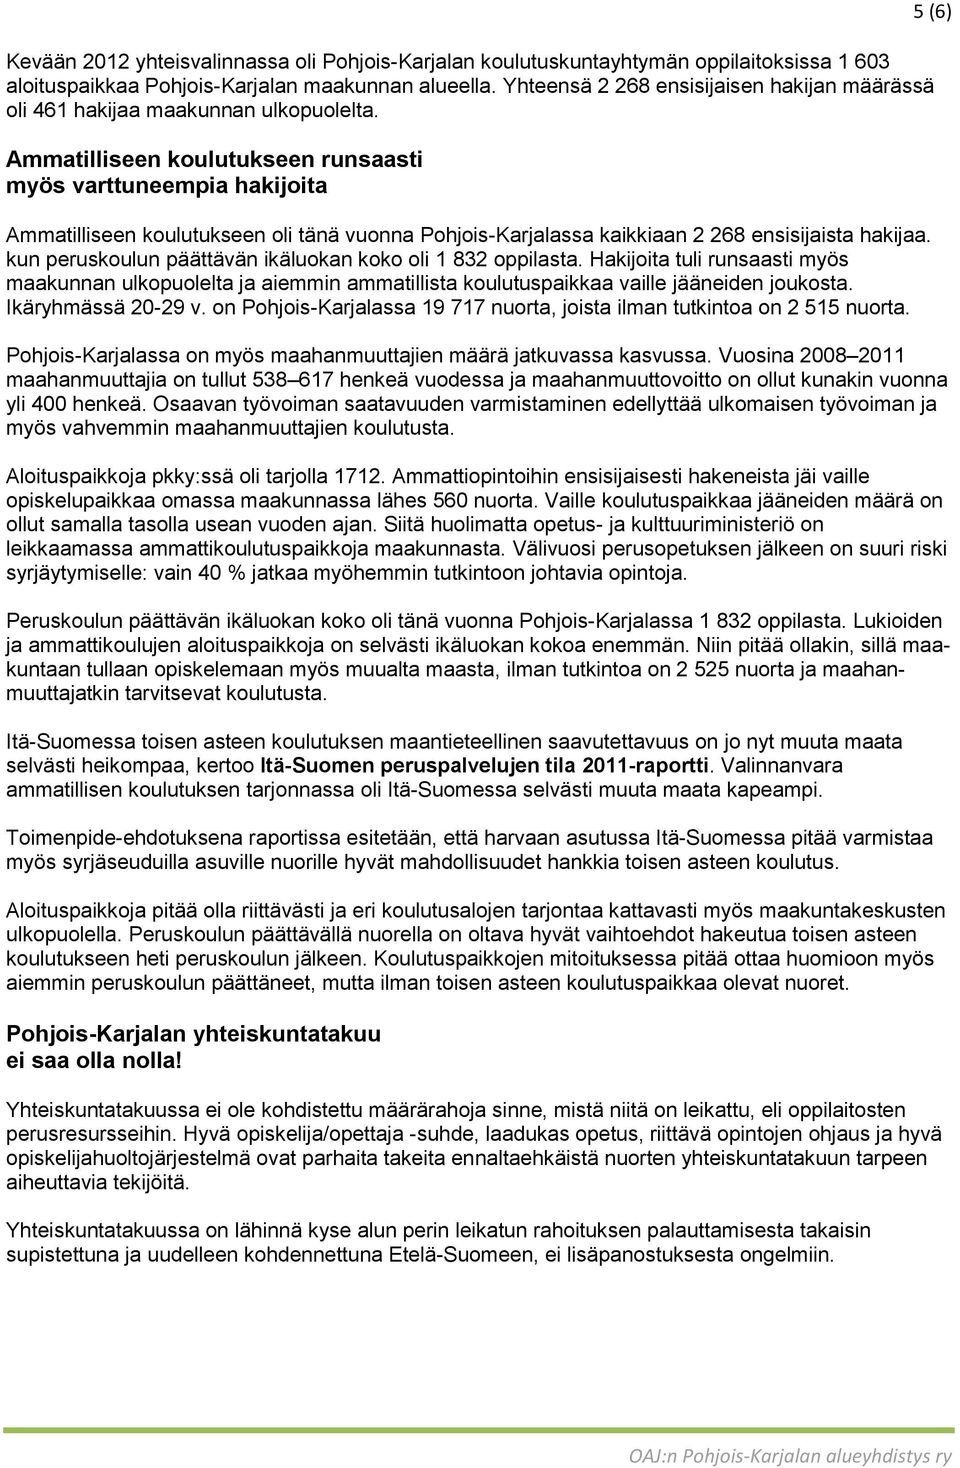 Ammatilliseen koulutukseen runsaasti myös varttuneempia hakijoita Ammatilliseen koulutukseen oli tänä vuonna Pohjois-Karjalassa kaikkiaan 2 268 ensisijaista hakijaa.